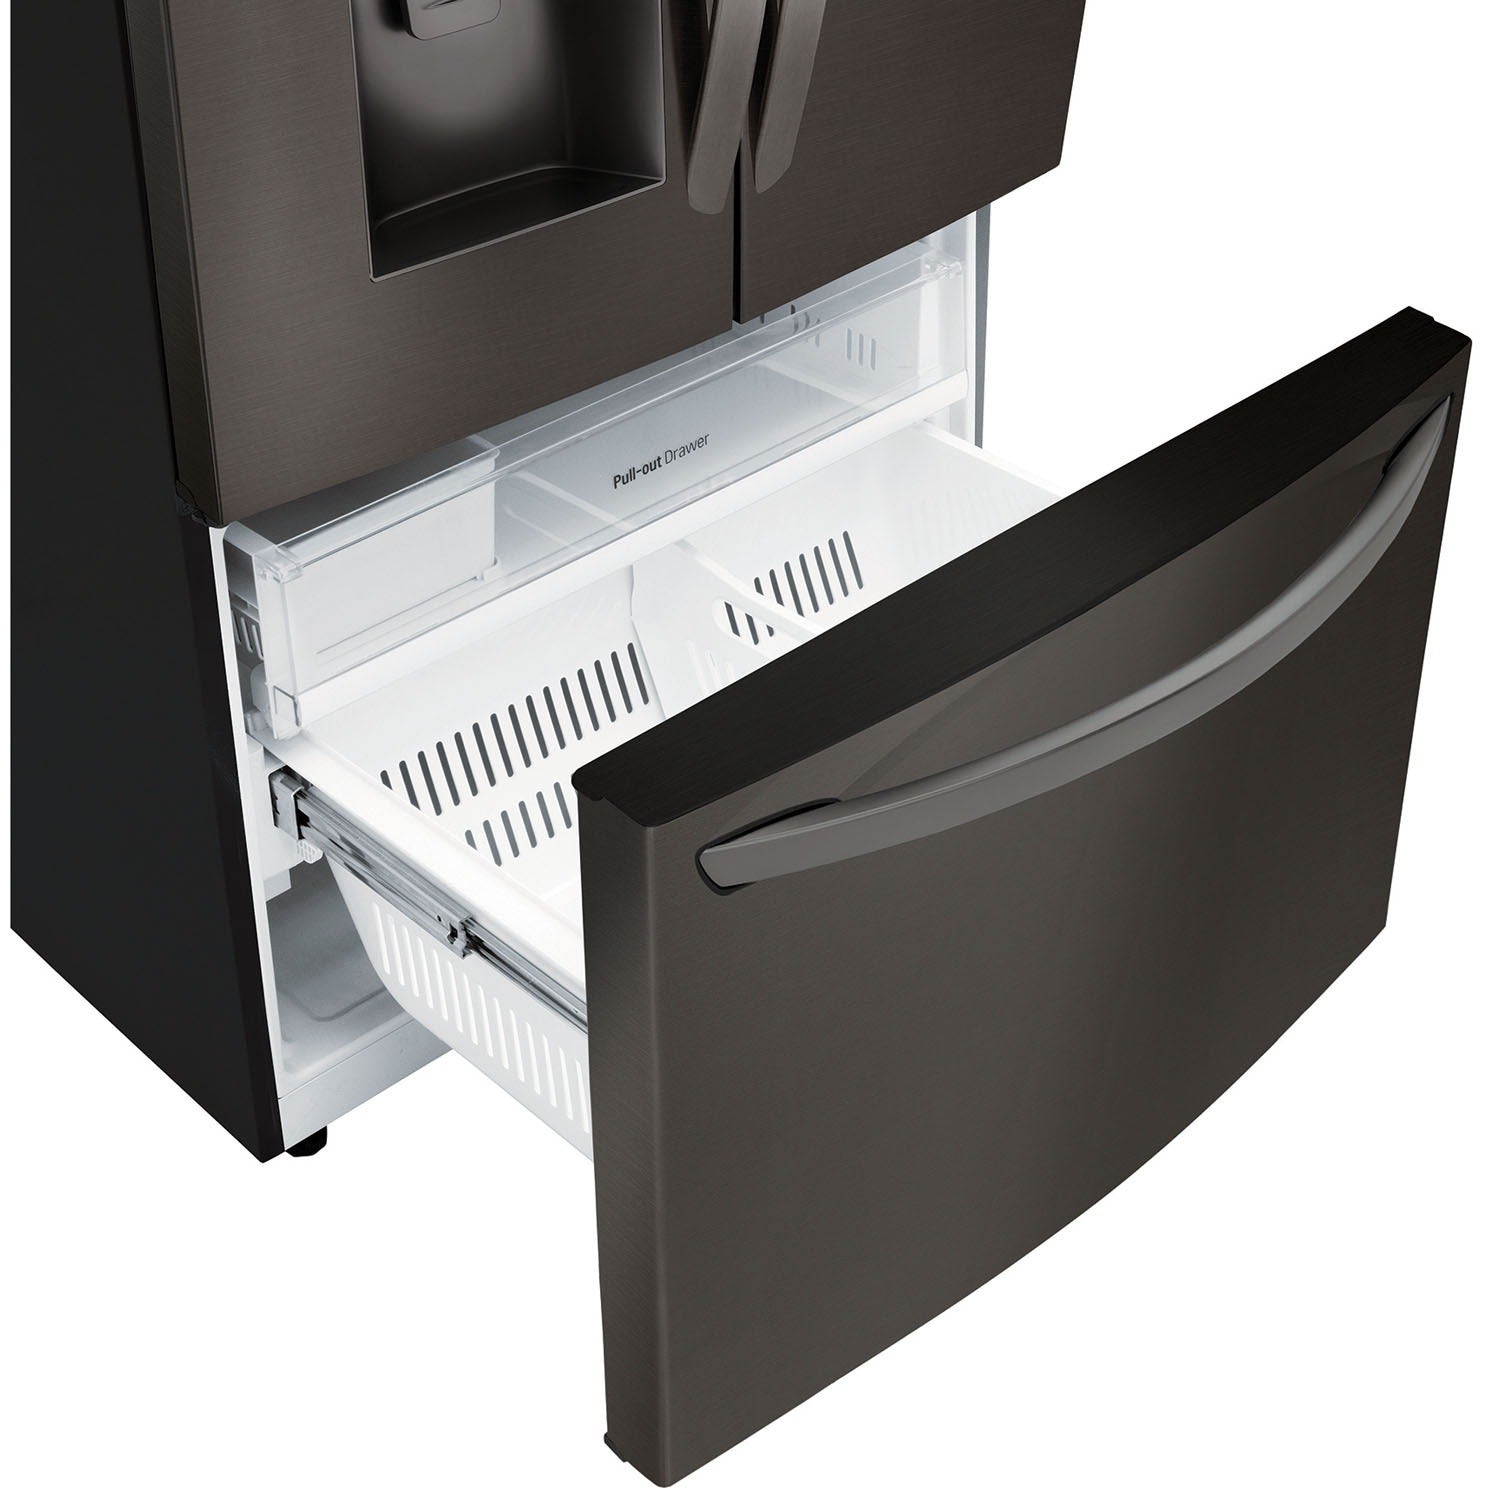 LG 36 Inch 3-Door French Door Refrigerator in Black Stainless Steel 28 Cu. Ft. (LFXS26973D)